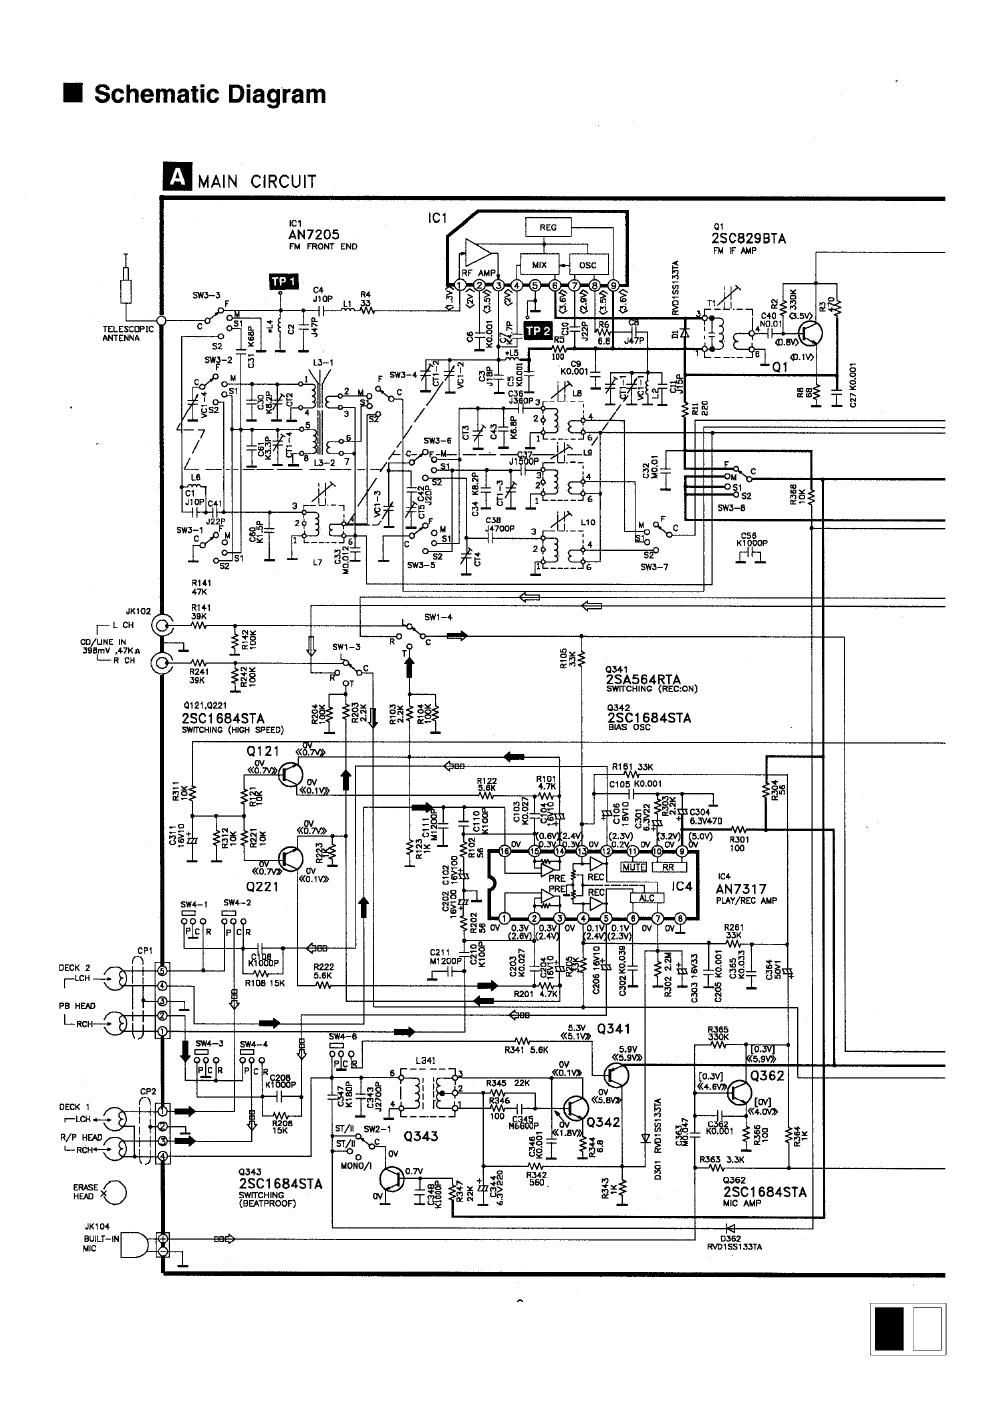 panasonic ct 870 schematic